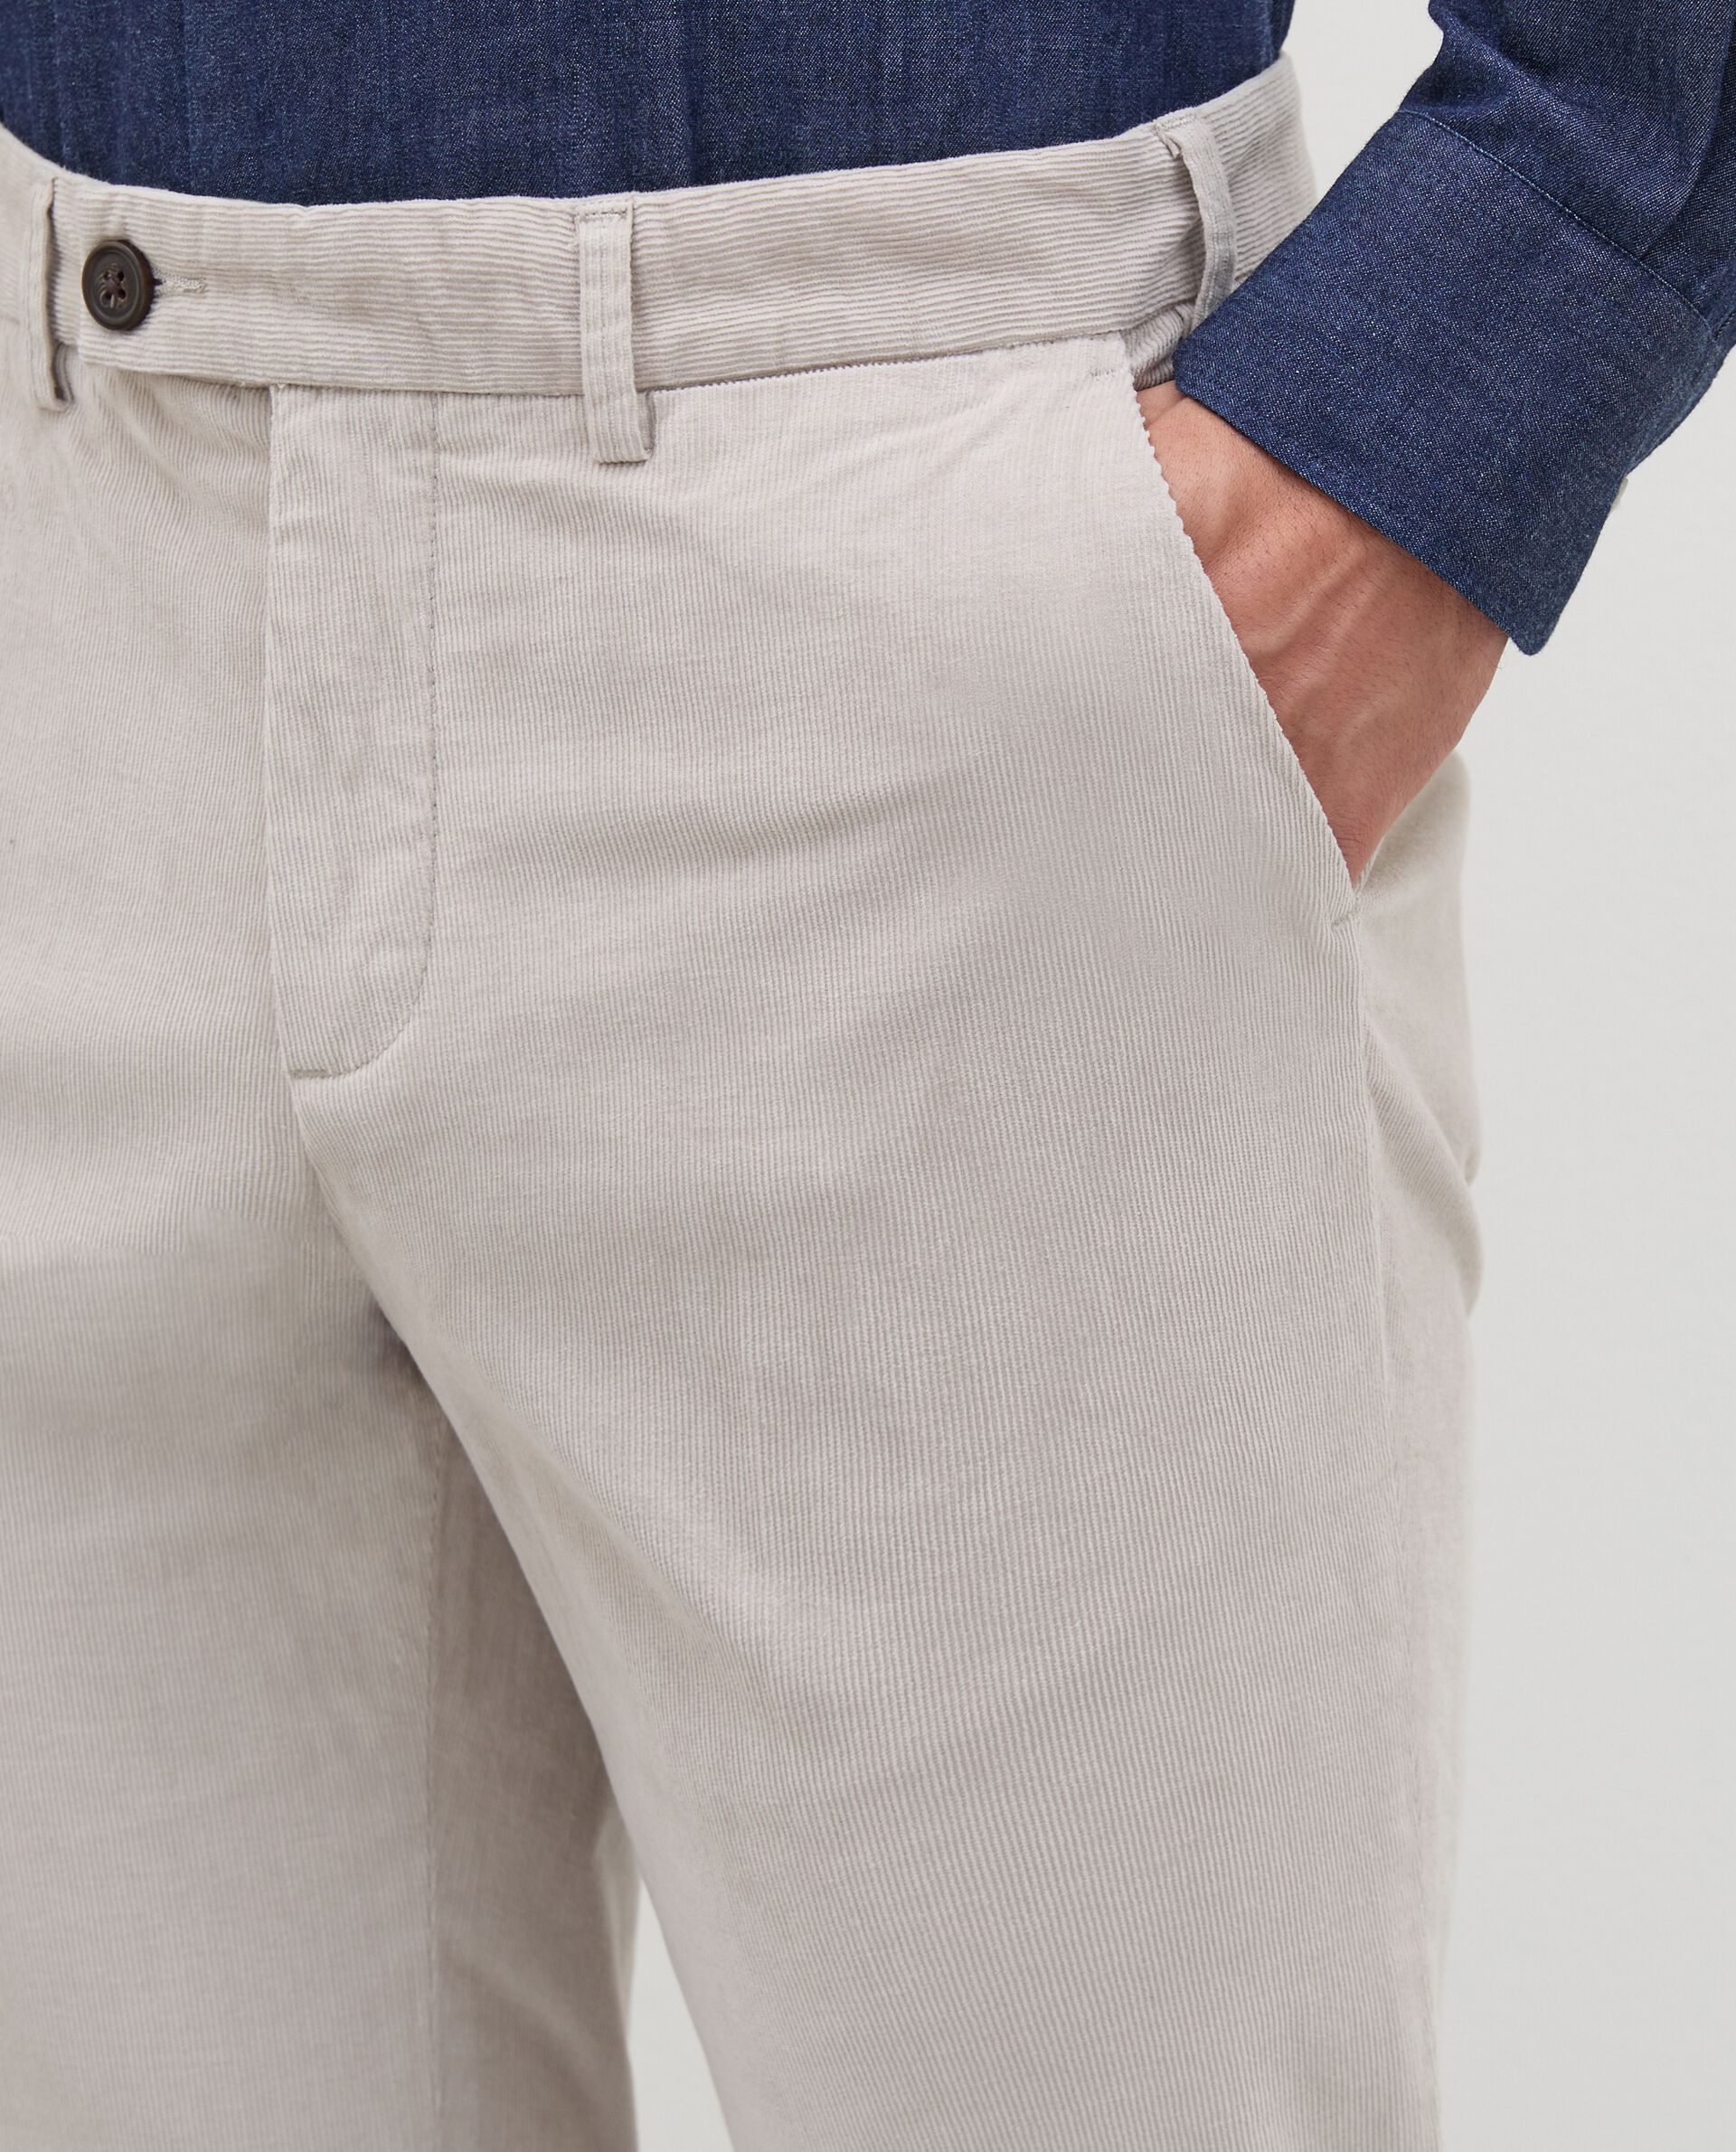 Pantaloni chino in velluto di cotone stretch uomo Rumford